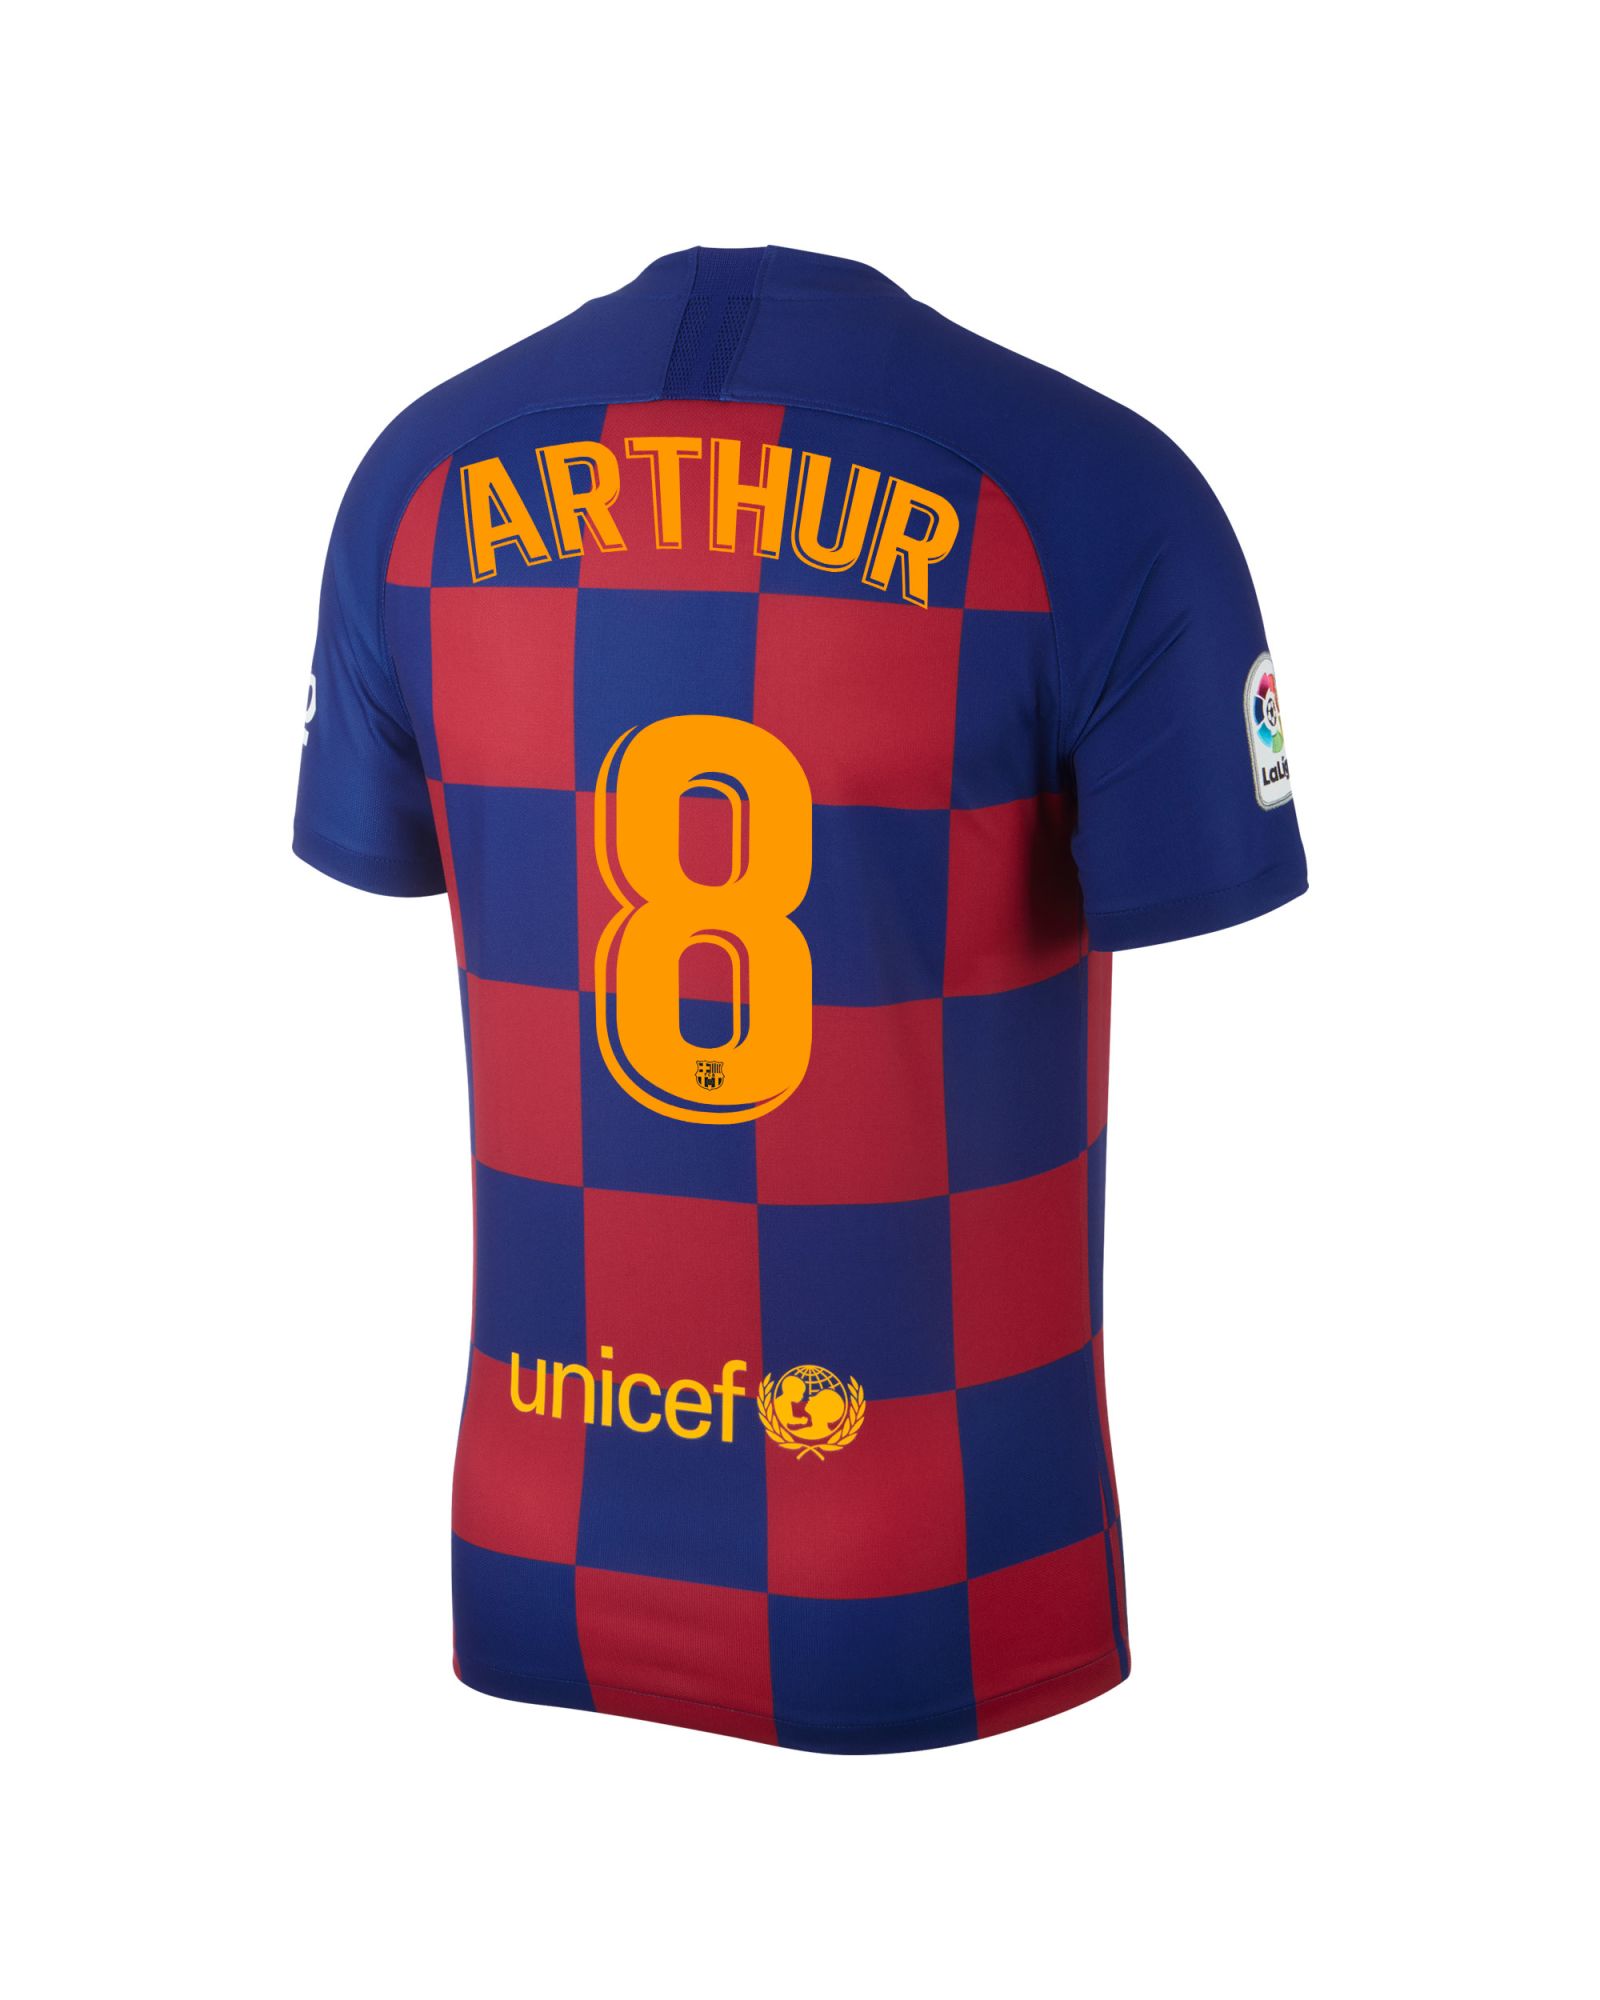 Camiseta 1ª FC Barcelona 2019/2020 Arthur - Fútbol Factory